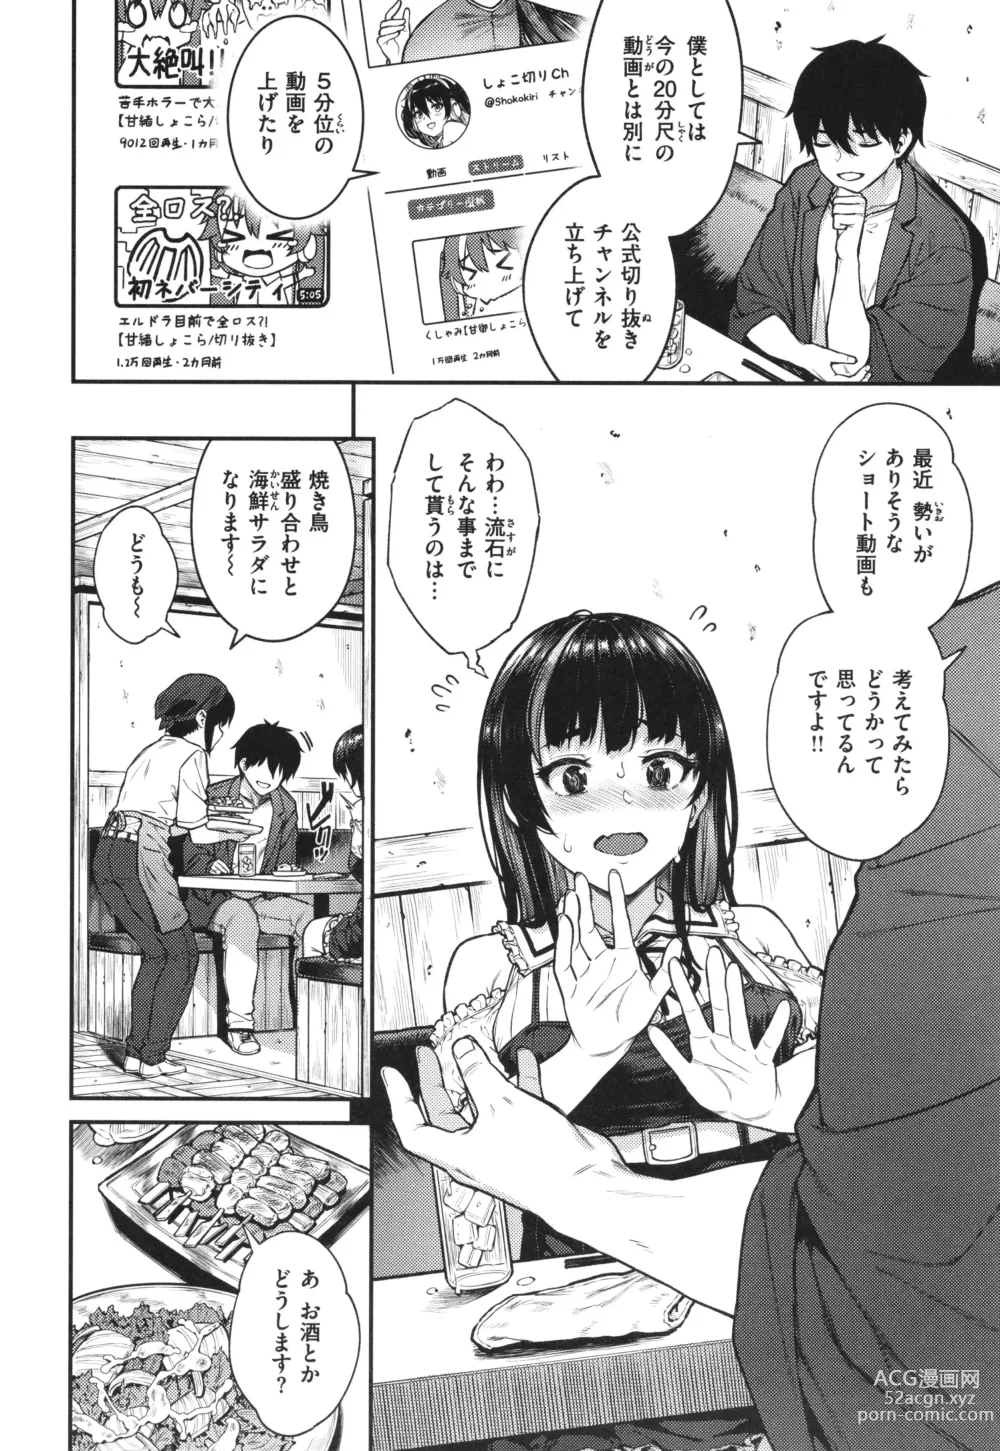 Page 6 of manga Hoshigarikko - Excited Girls Play + Toranoana Gentei Tokuten COMICS ROUGH&CHARACTAR NOTES